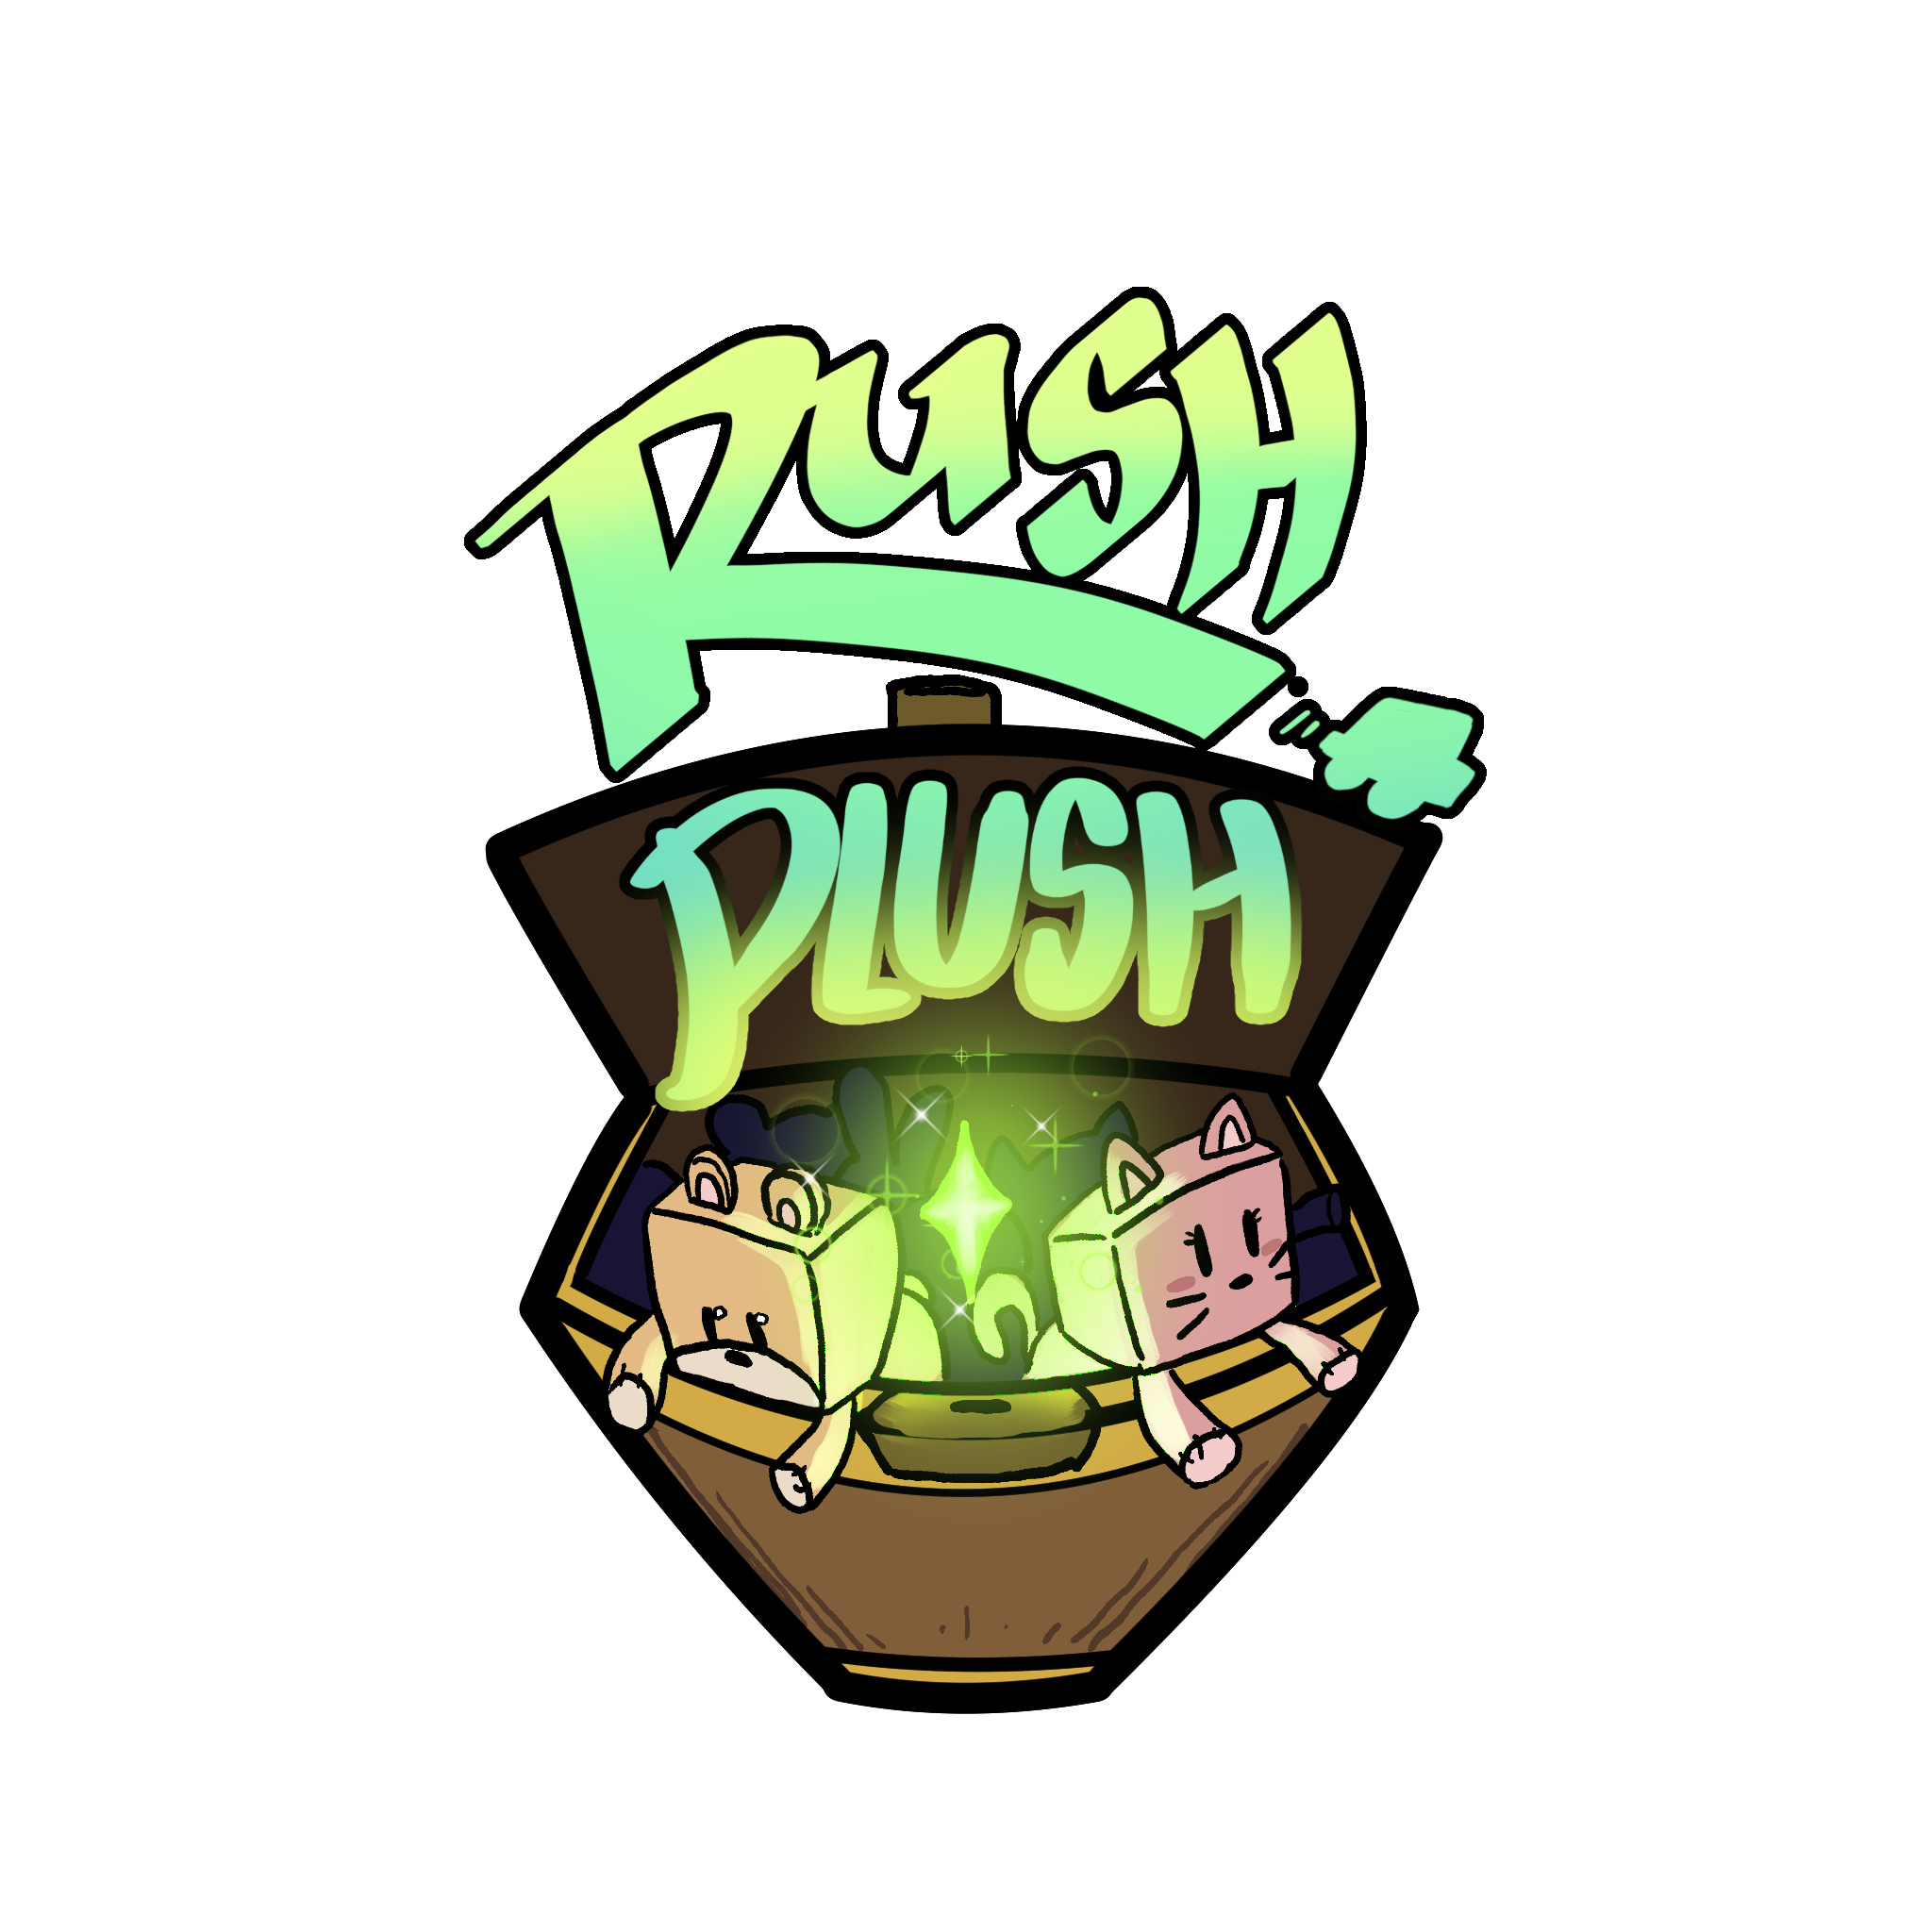 Rush Plush Title Artwork